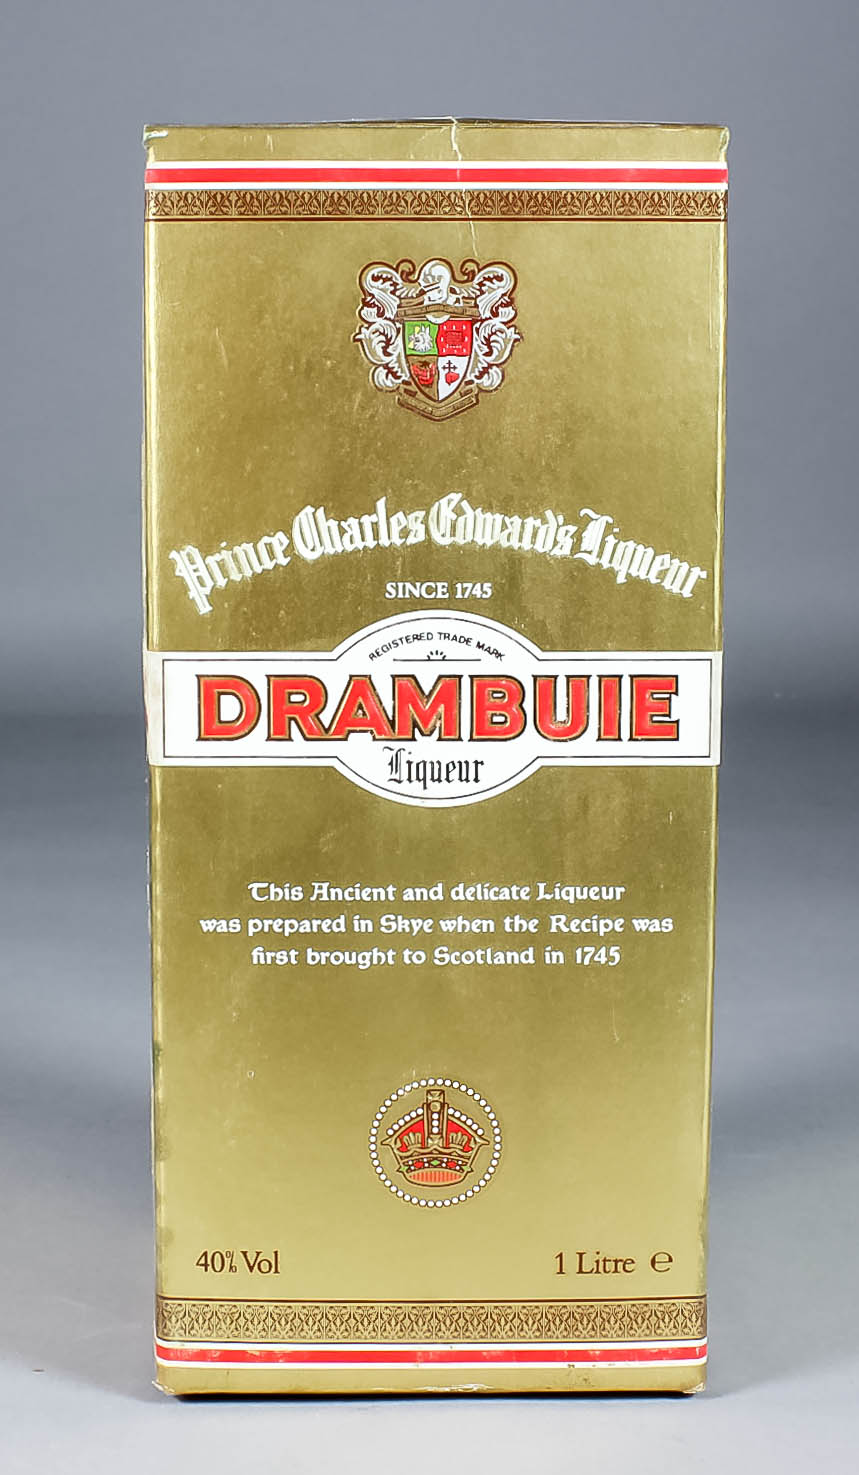 Eleven one litre bottles of Drambuie Scotch Liqueur (40% proof)